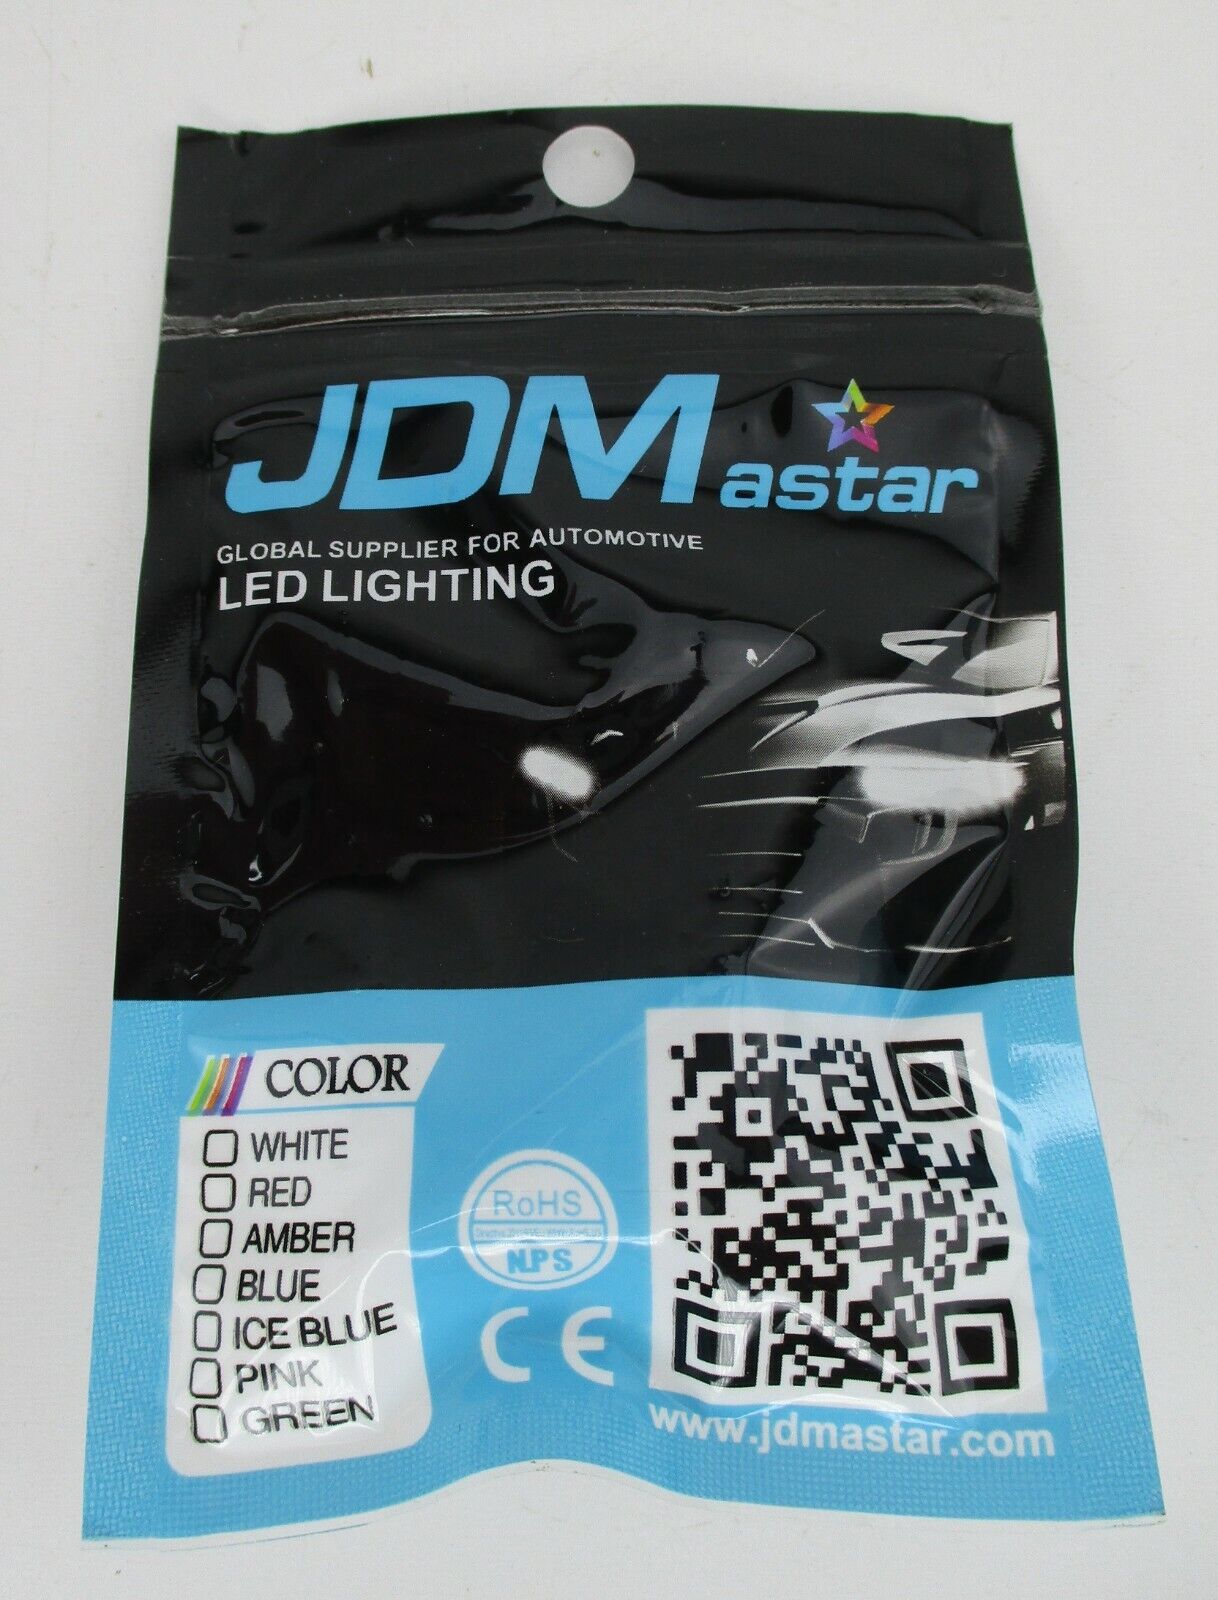 JDM Astar LED Lighting Extr Reverse Light, Xenon White Pair 800 Lumens